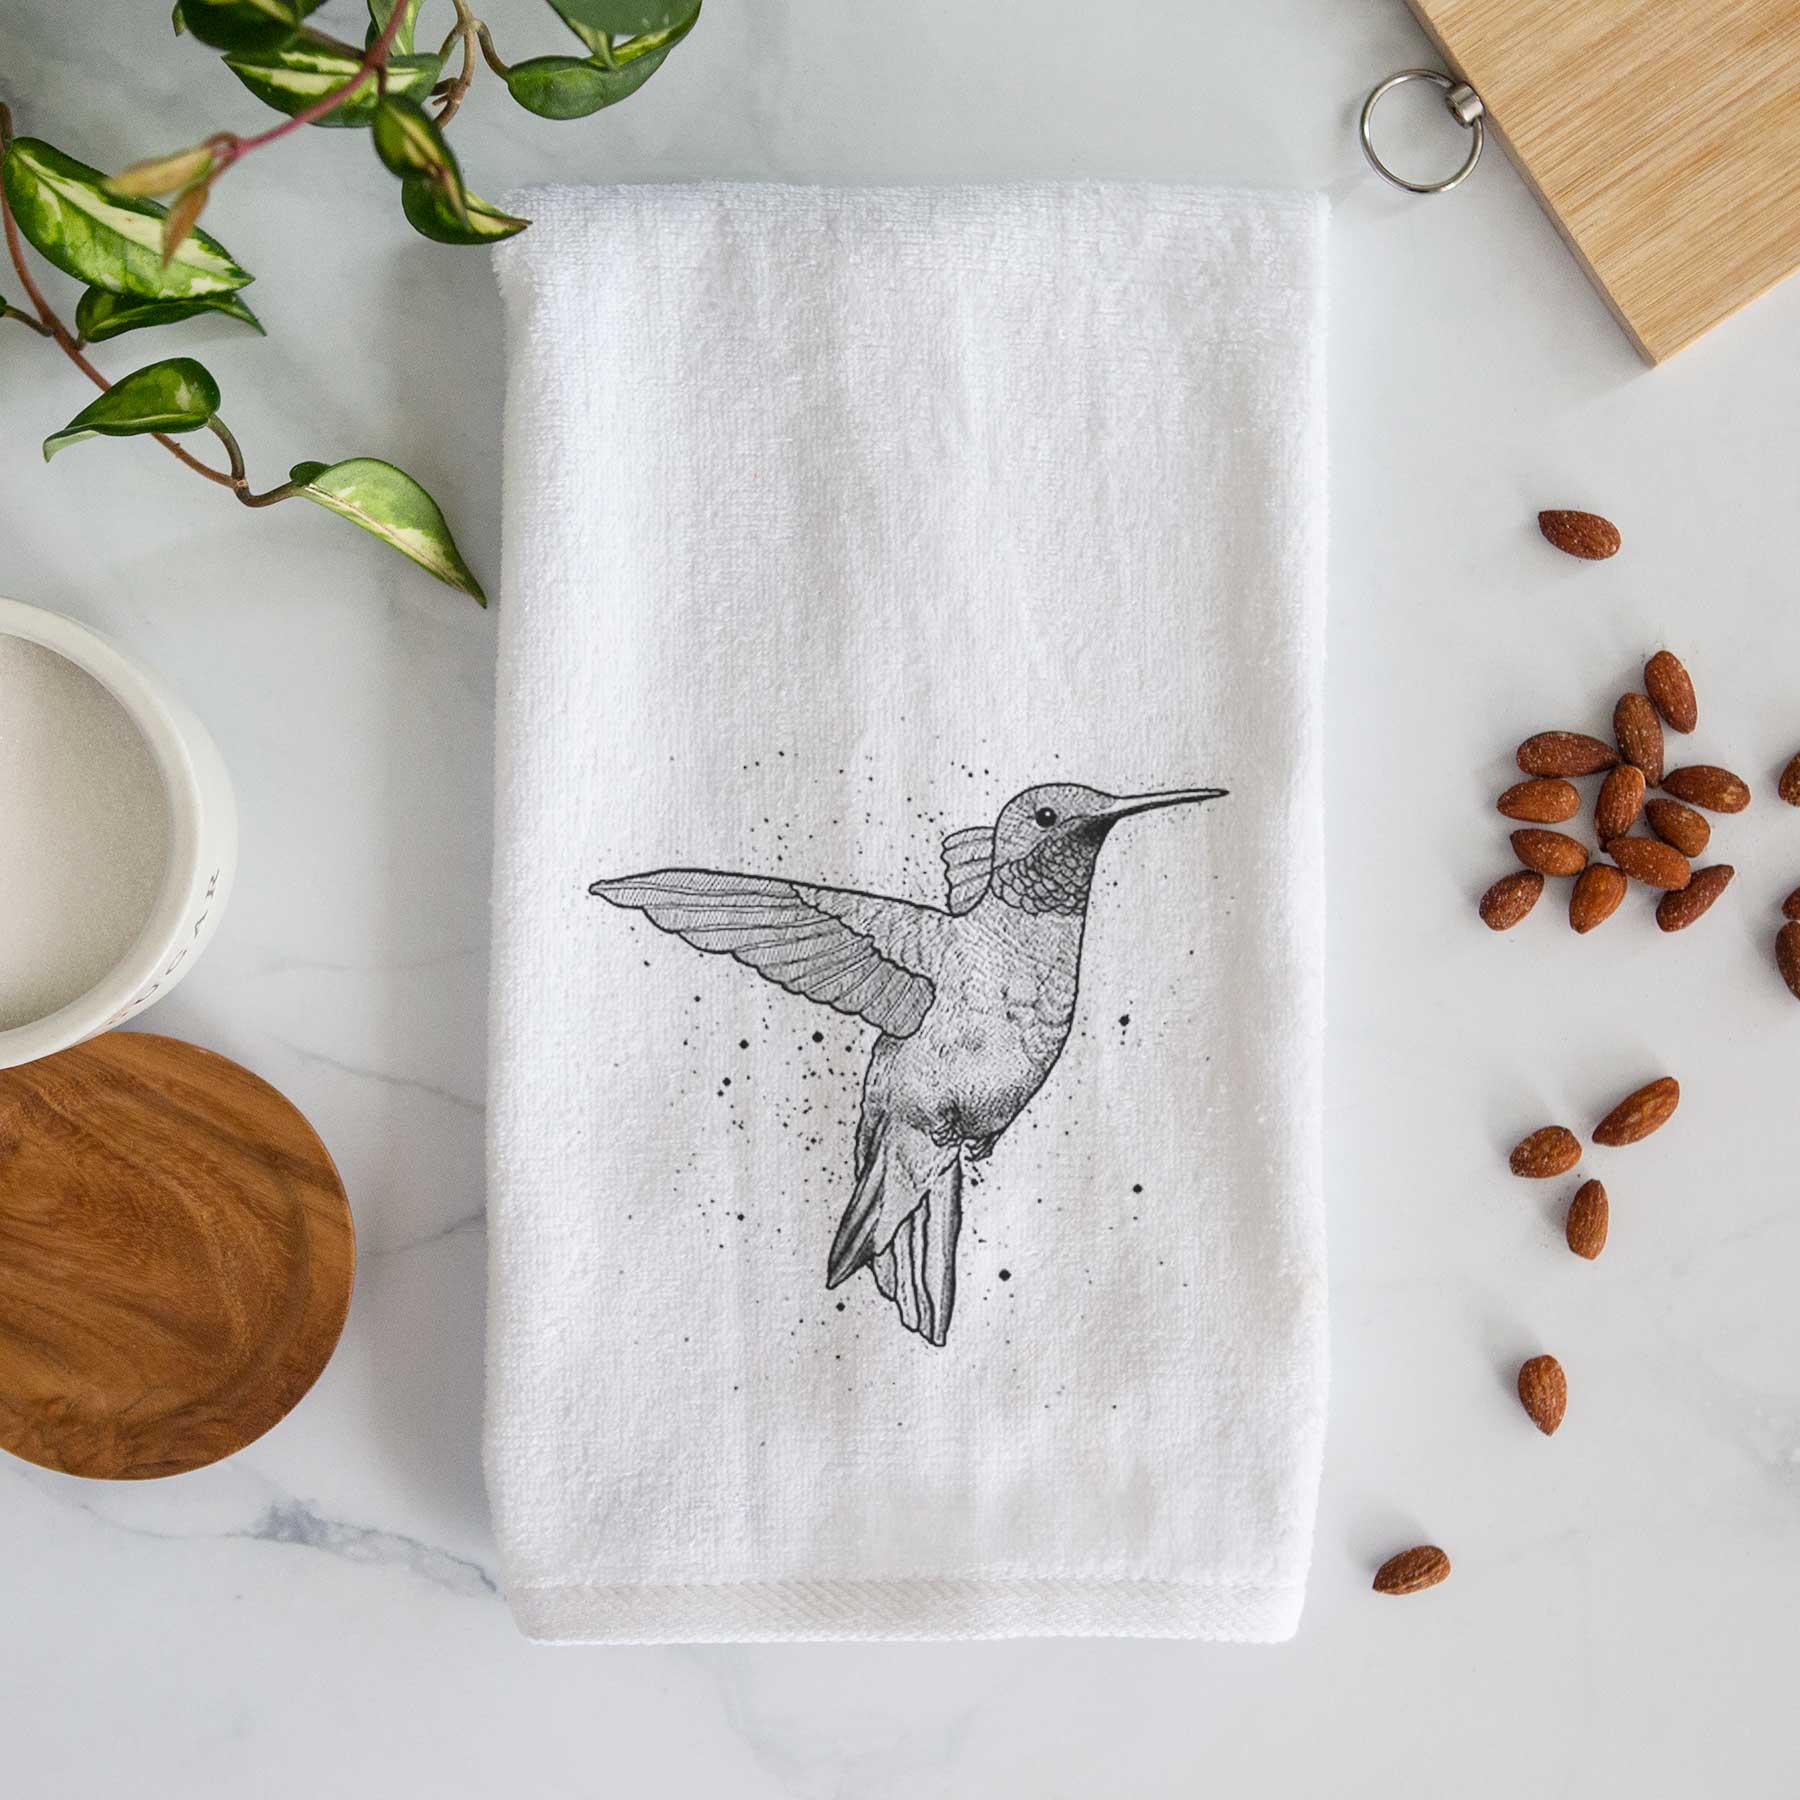 Hummingbird hand towel